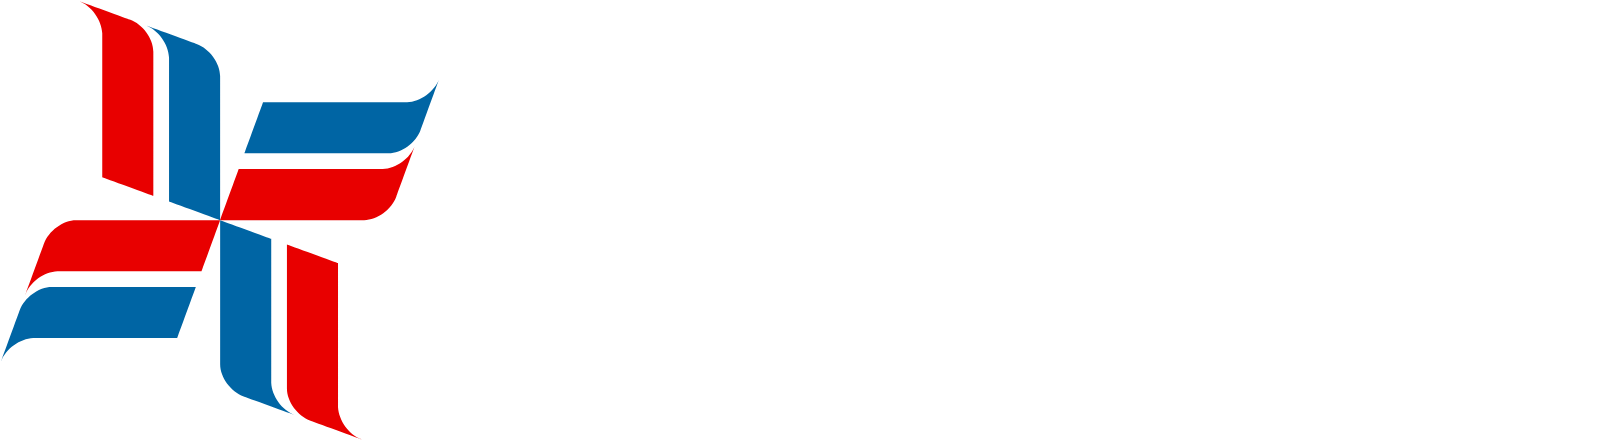 Bristow Group Logo groß für dunkle Hintergründe (transparentes PNG)